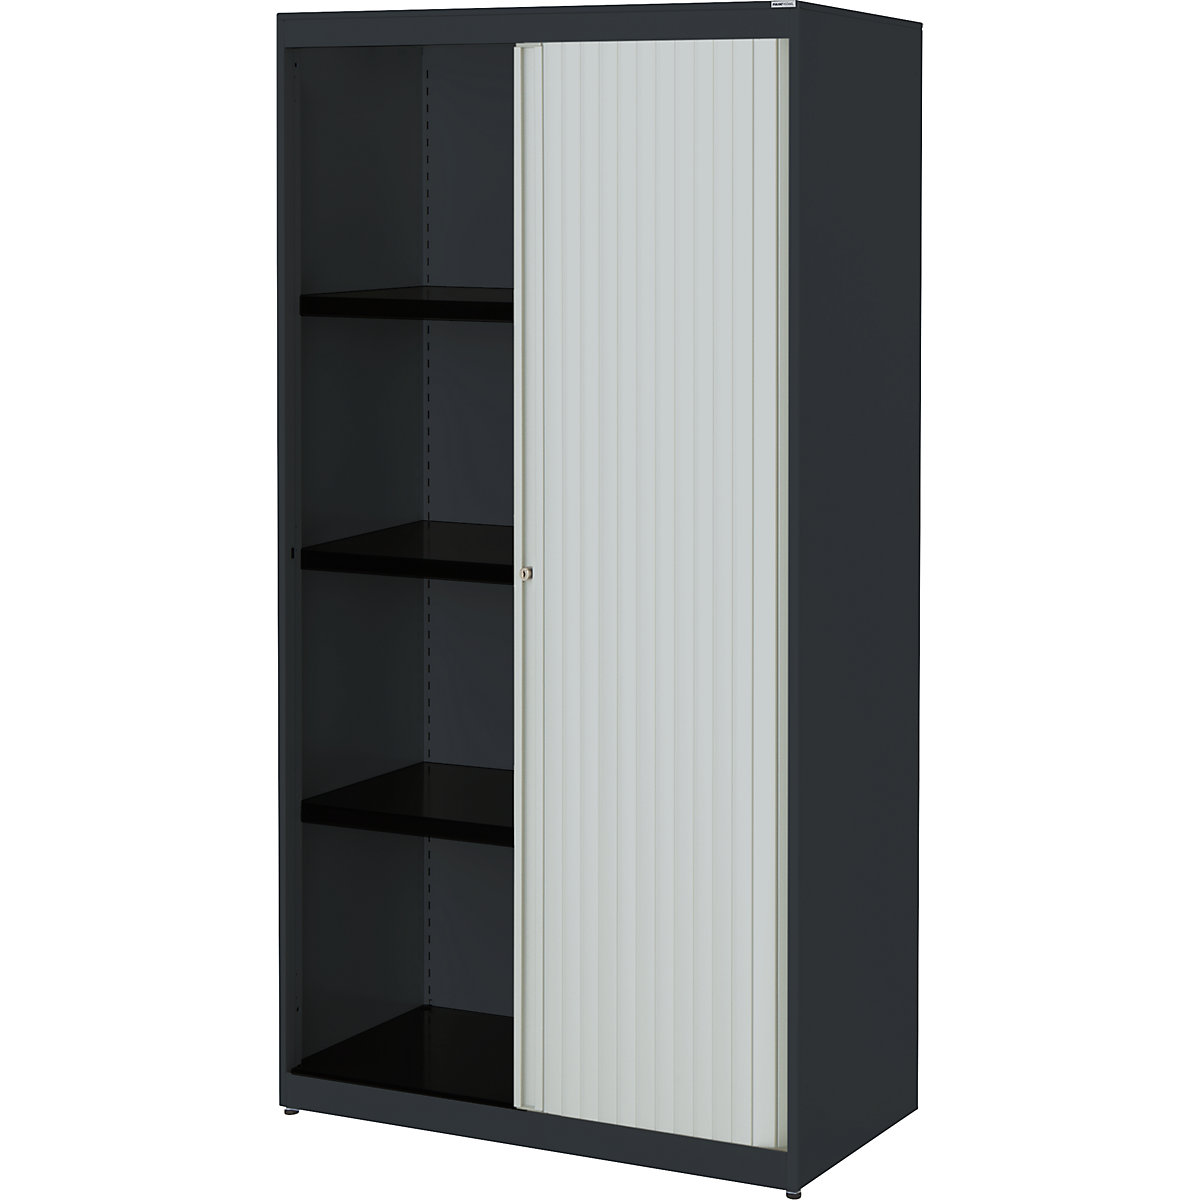 Horizontal roller shutter cupboard – mauser, HxWxD 1516 x 800 x 432 mm, steel plate, 3 shelves, charcoal / light grey / charcoal-4